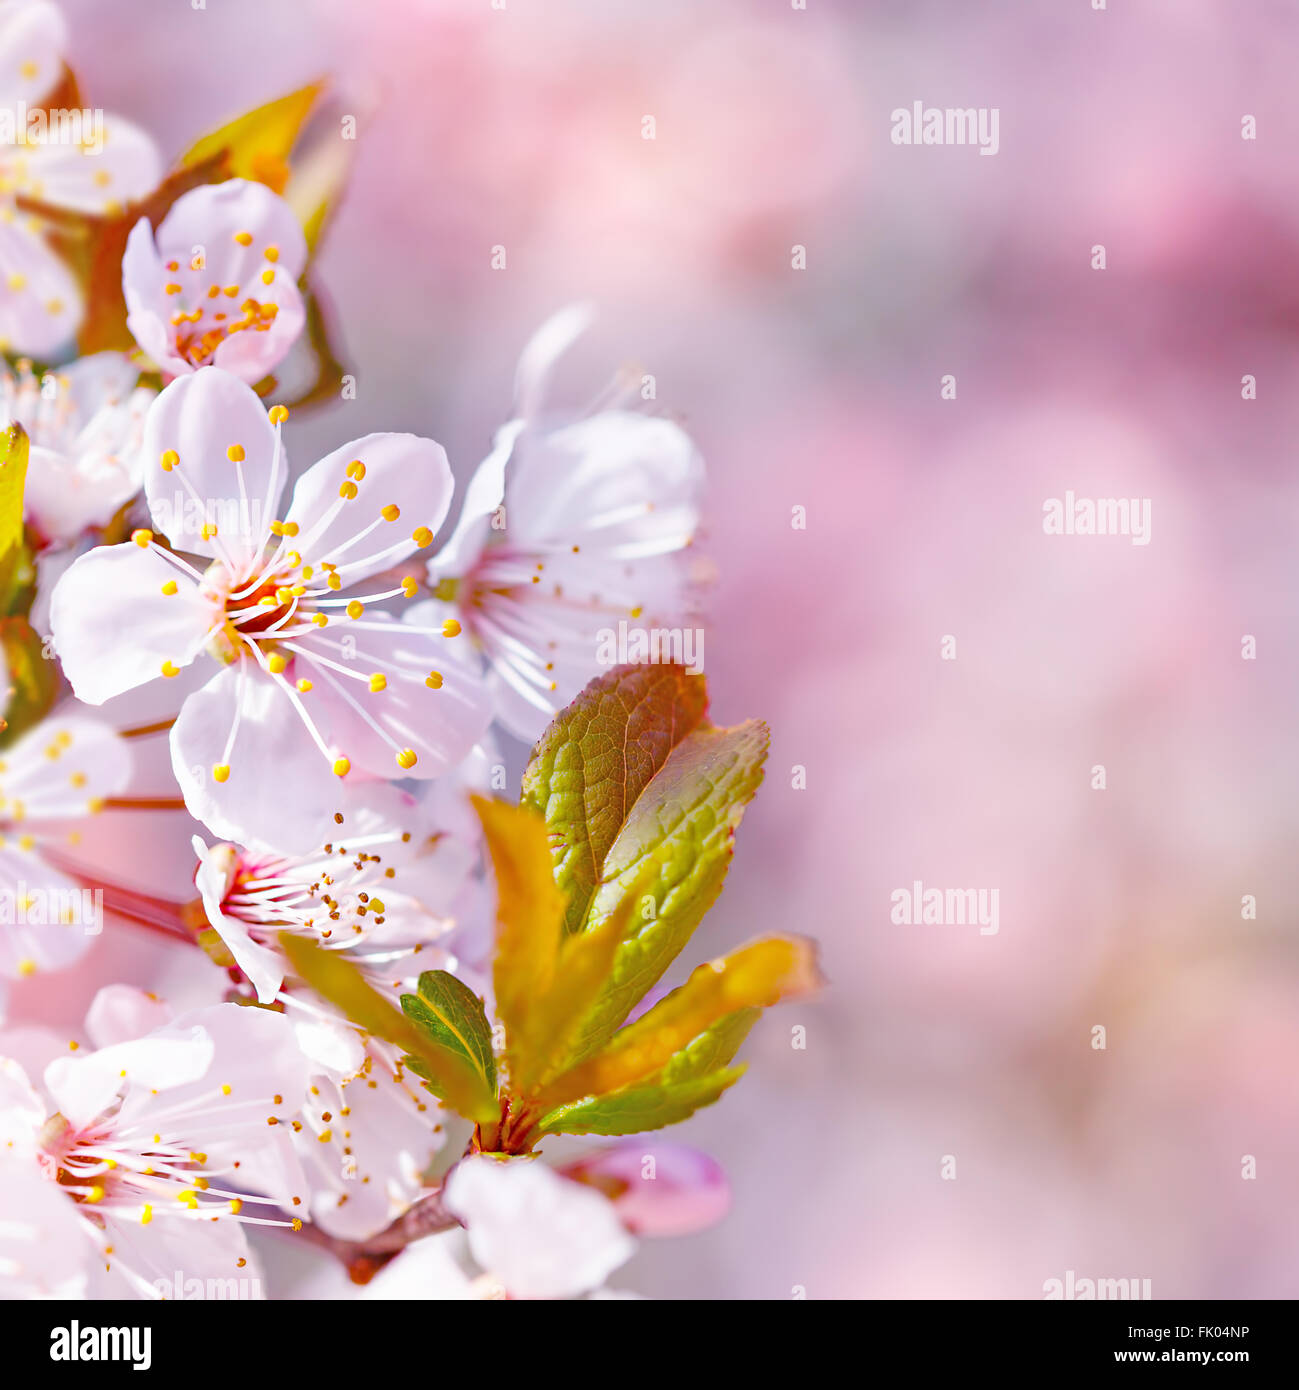 Schönen Apfelbaum blüht, sanfte kleine weiße Blüten am Zweig über Unschärfe rosa Hintergrund, floralen romantischen Grenze Stockfoto